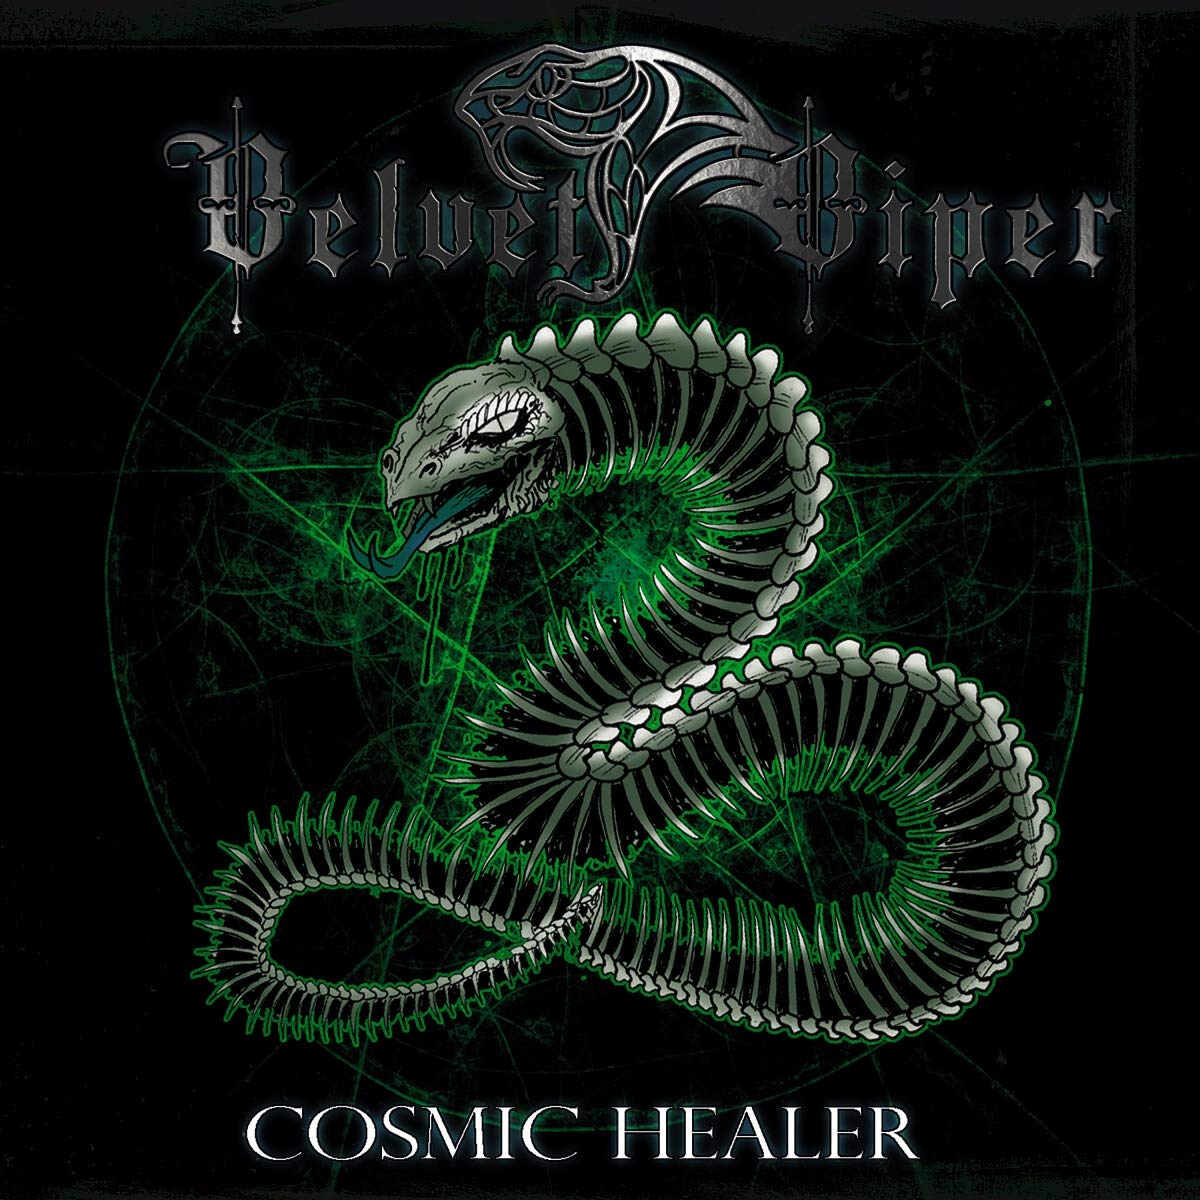 Velvet Viper-Cosmic Healer-(MAS DP1178)-CD-FLAC-2021-WRE